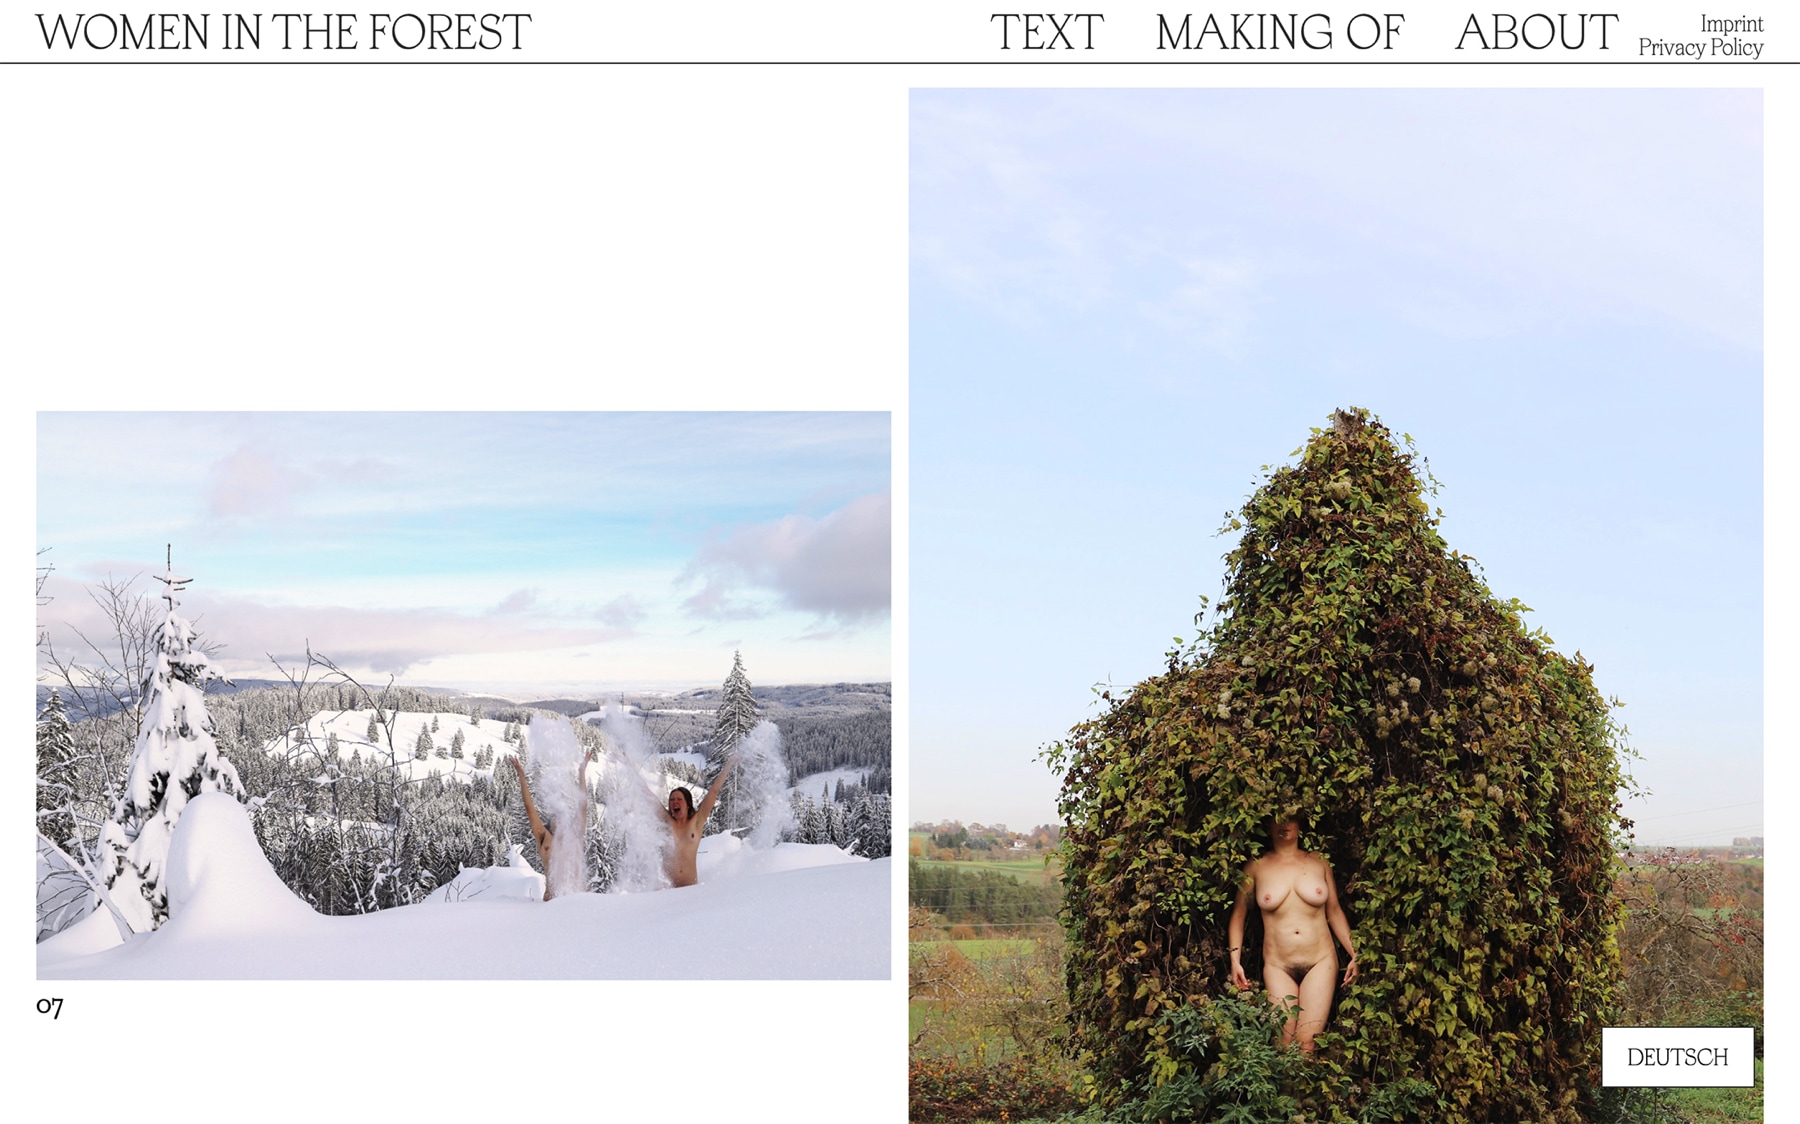 Women in the forest website — womenintheforest.net